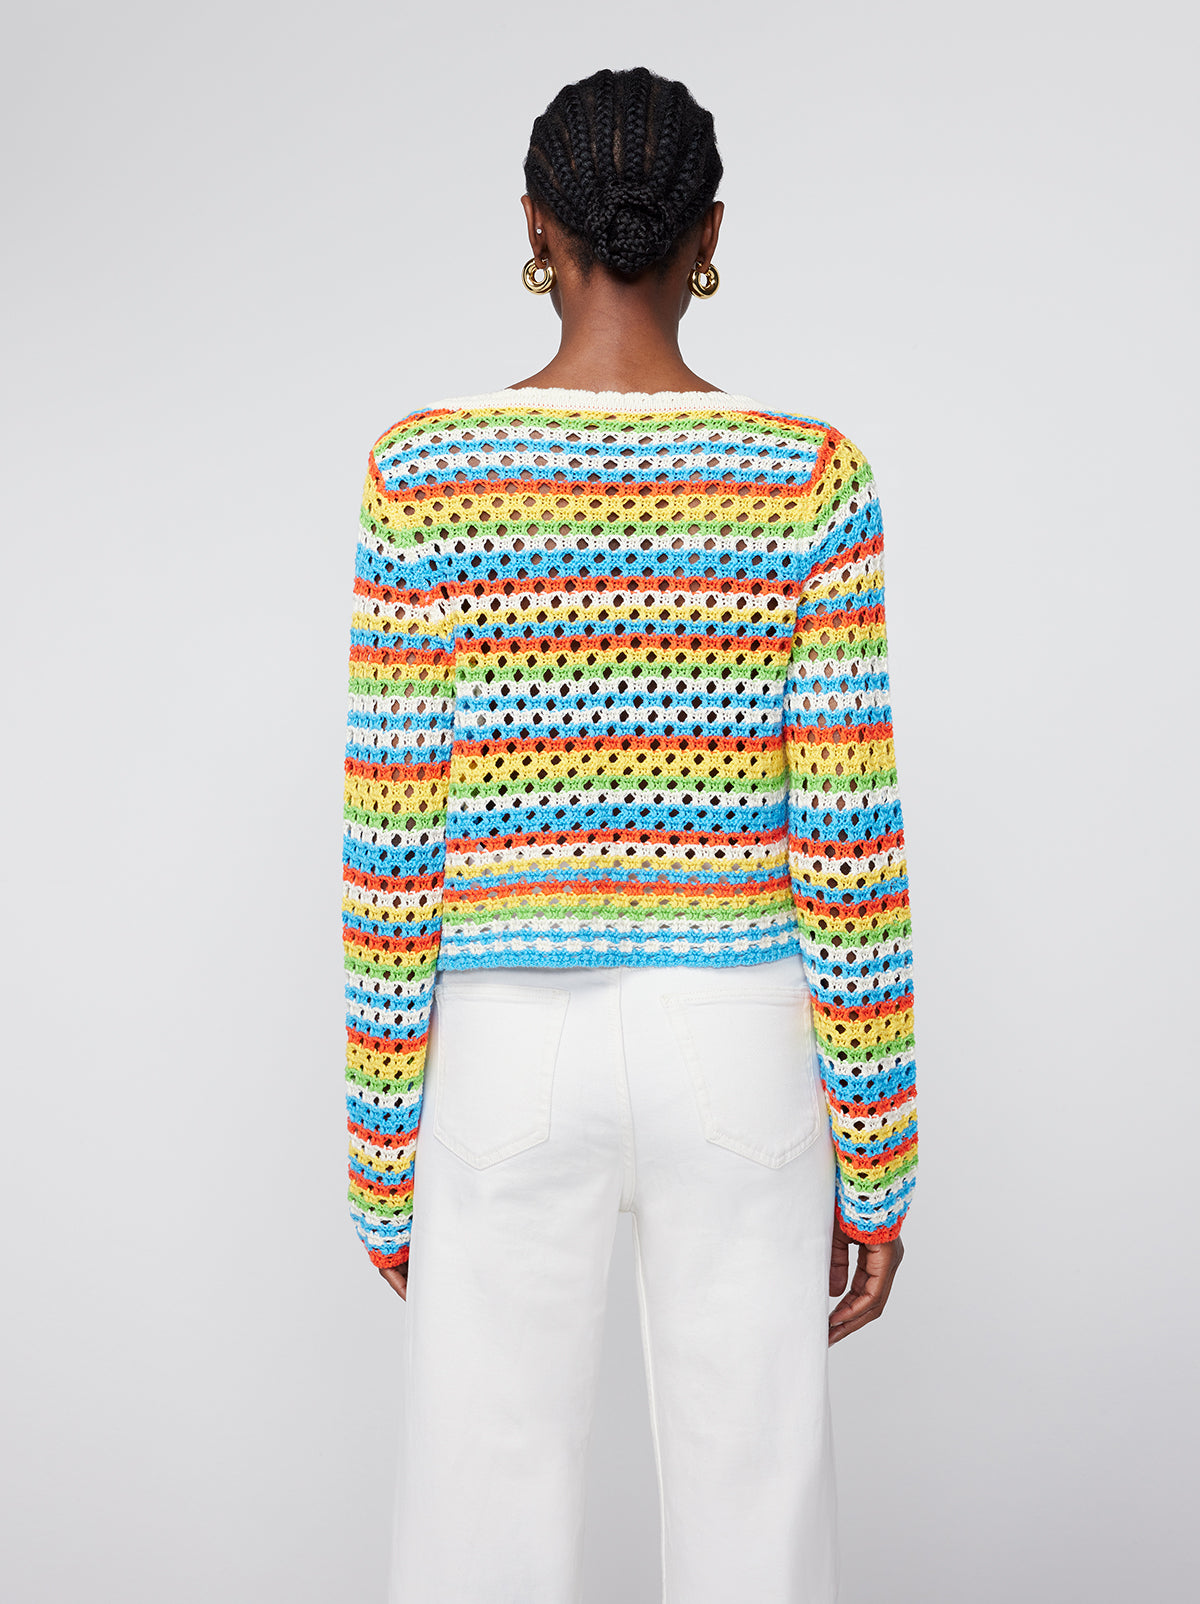 Dionne Blue Stripe Crochet Knit Cardigan